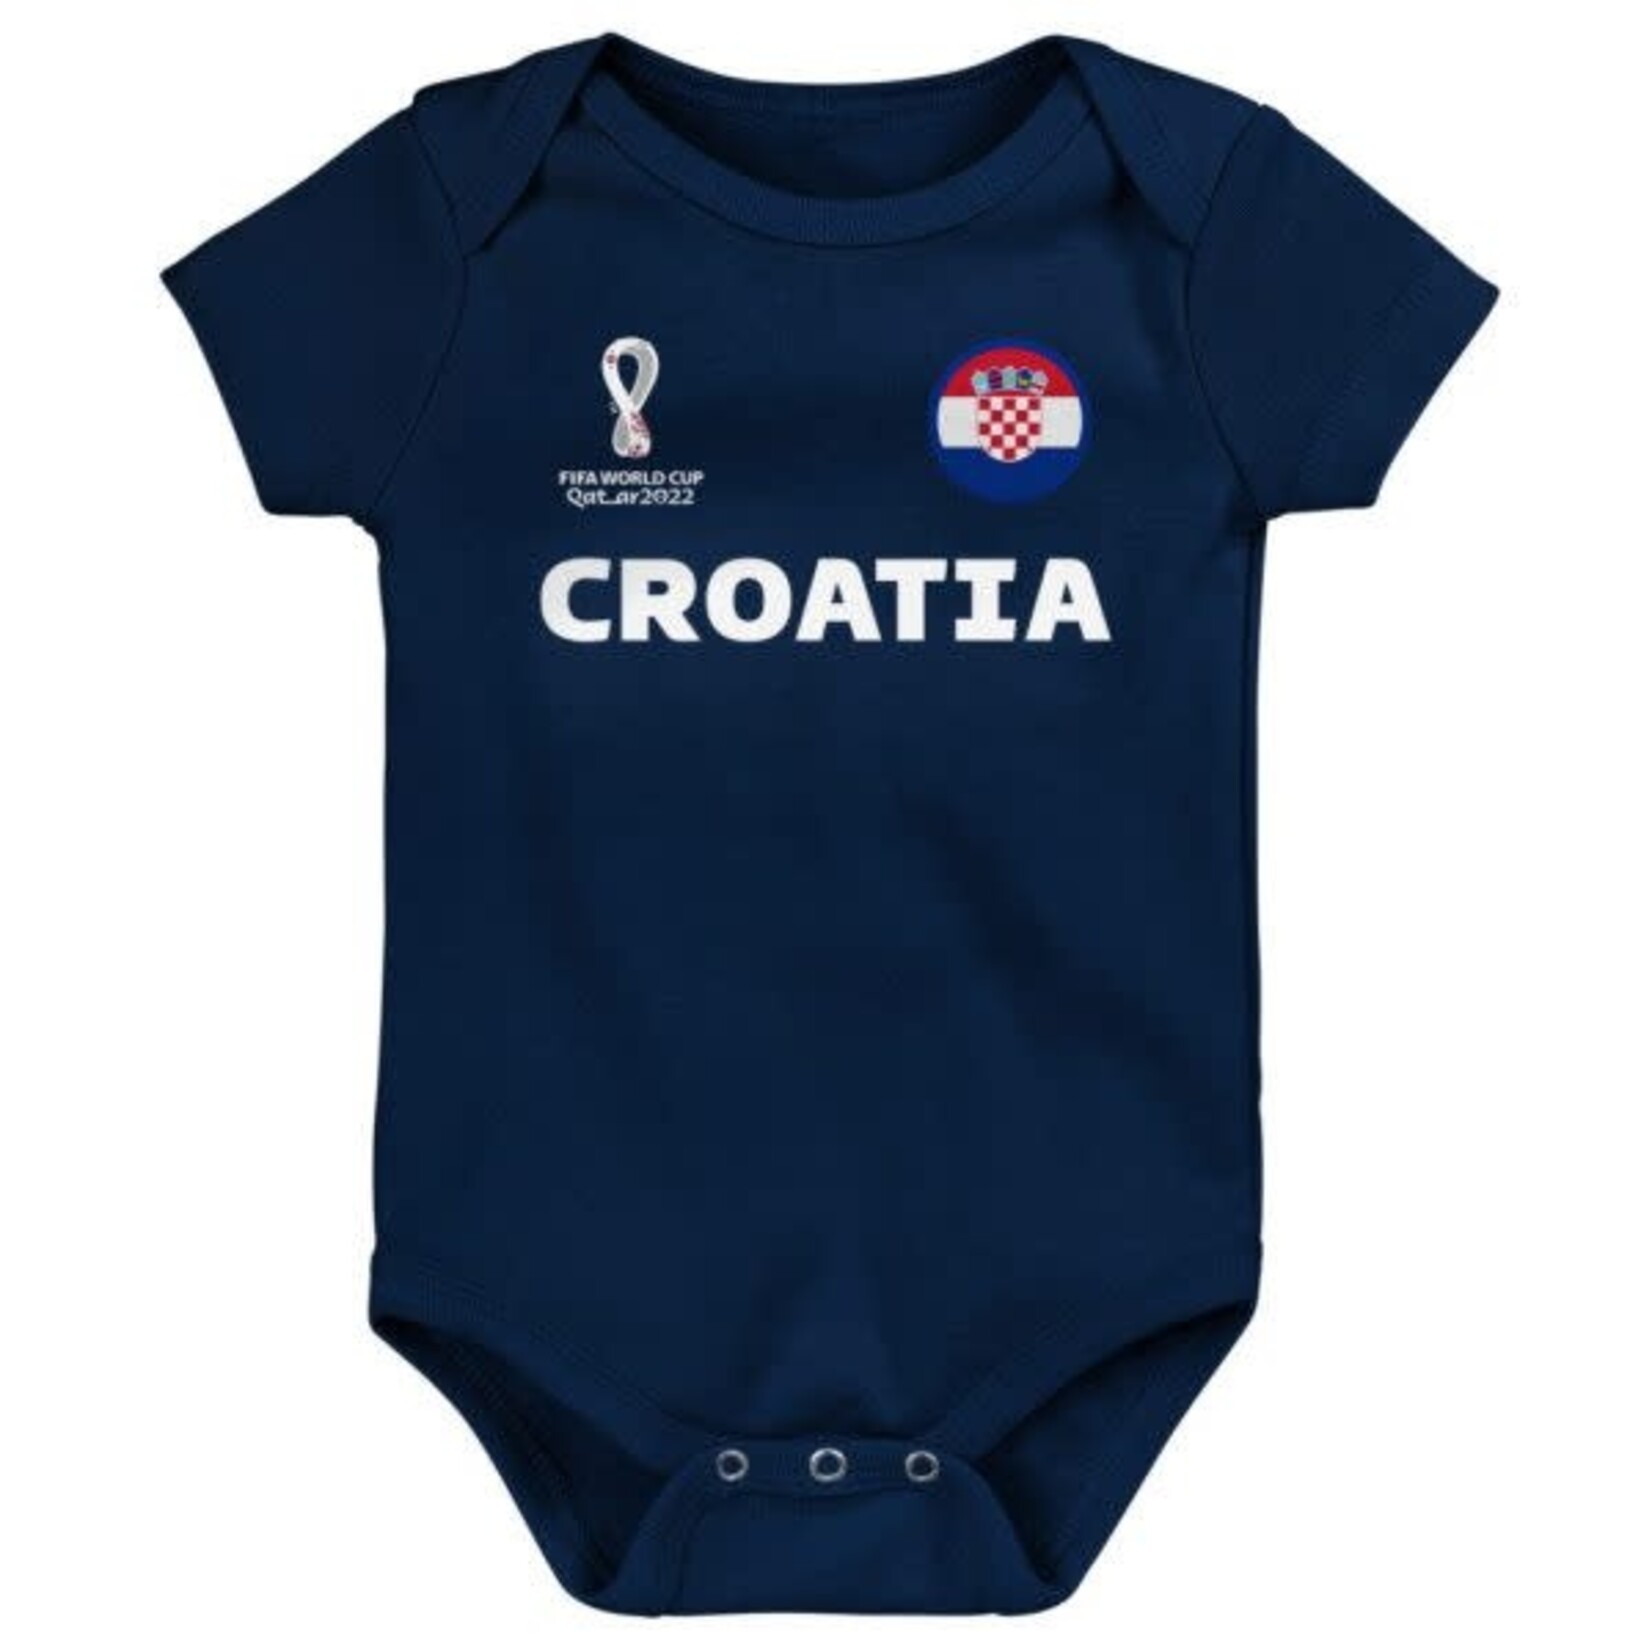 Croatia World Cup Baby Onesie